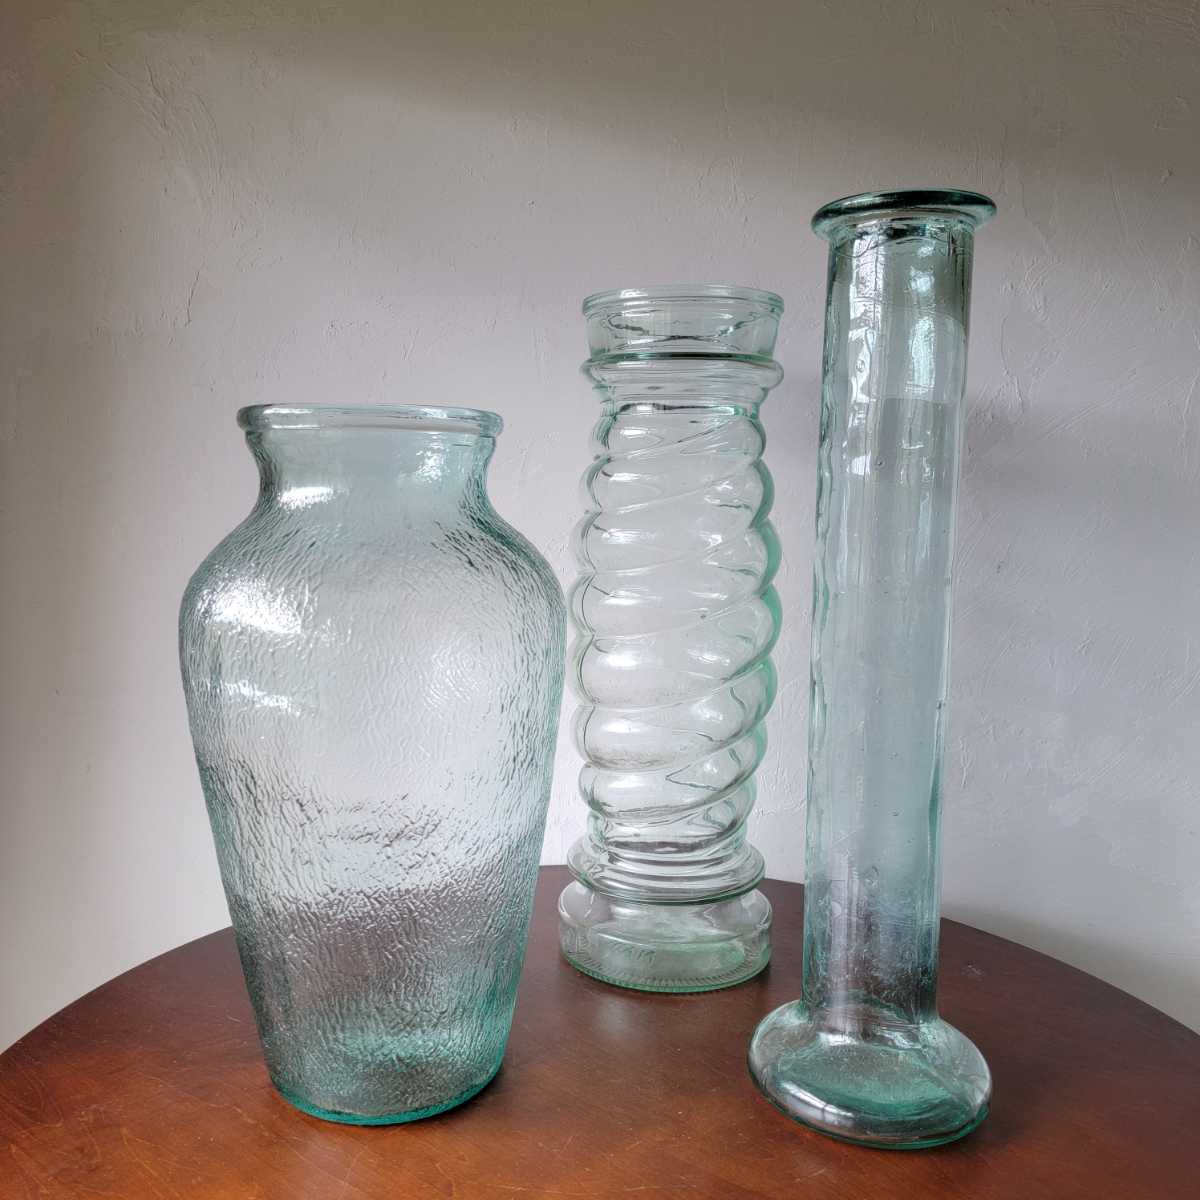 ゆらゆら イタリア製 ガラス瓶 花瓶 気泡 置物 オブジェ インテリア